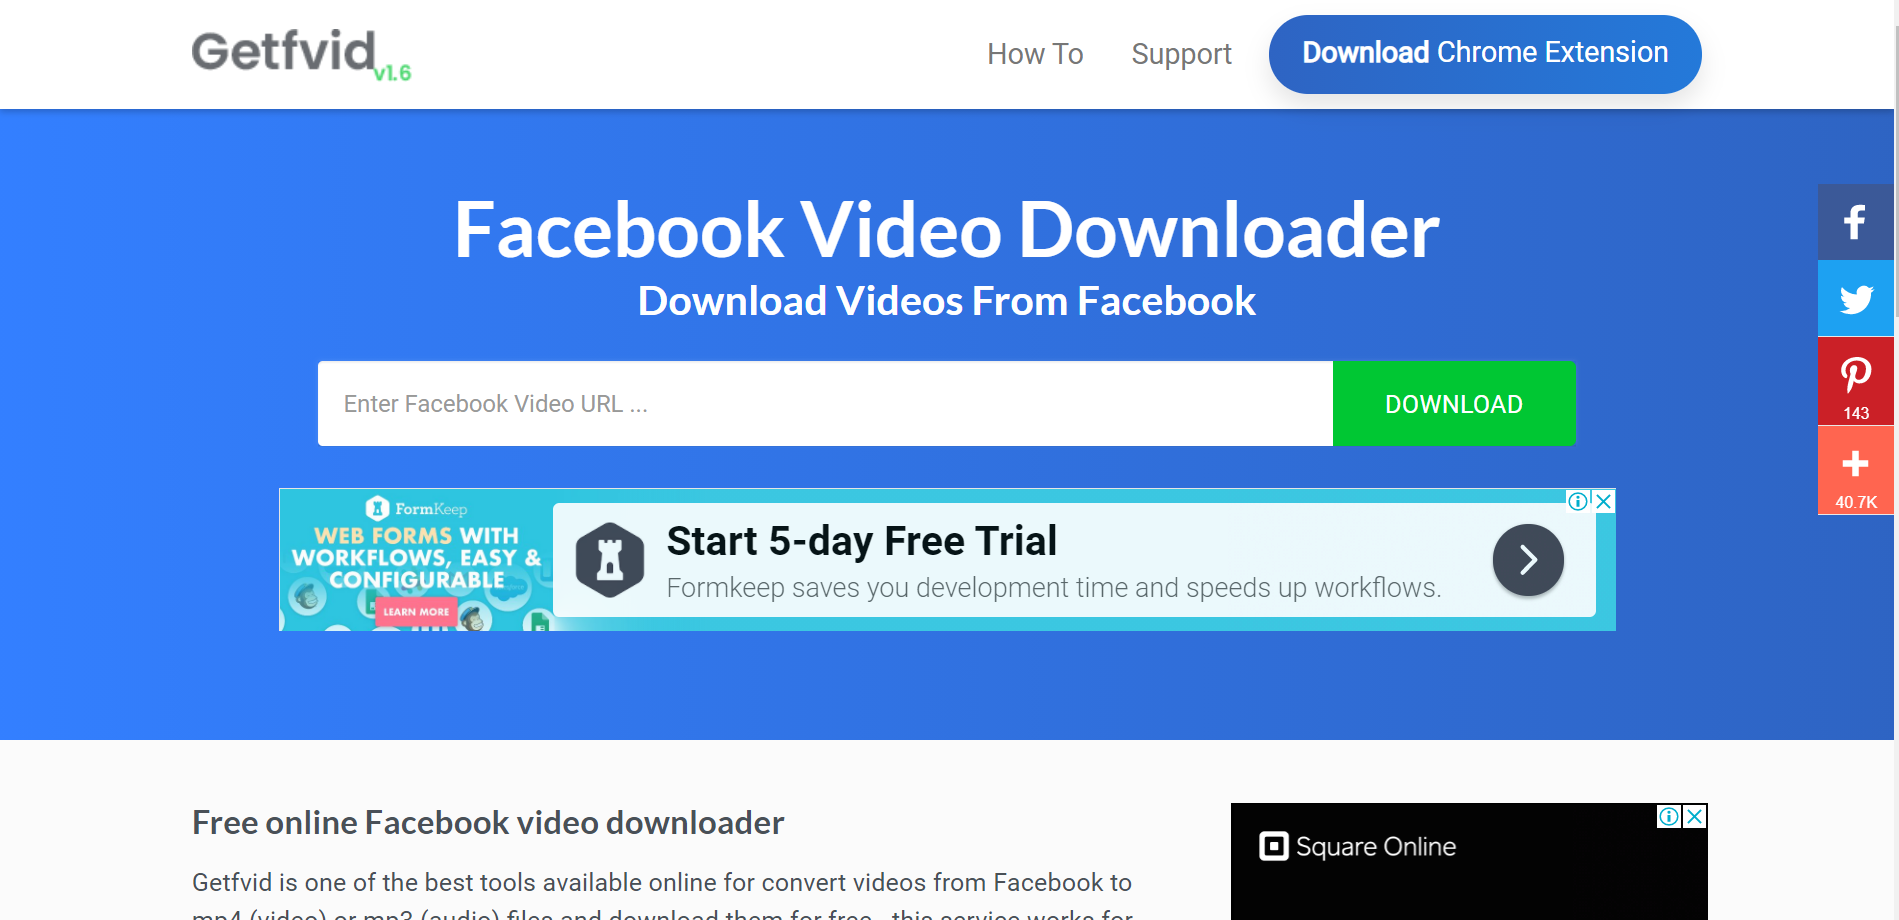 download the last version for windows Facebook Video Downloader 6.17.9